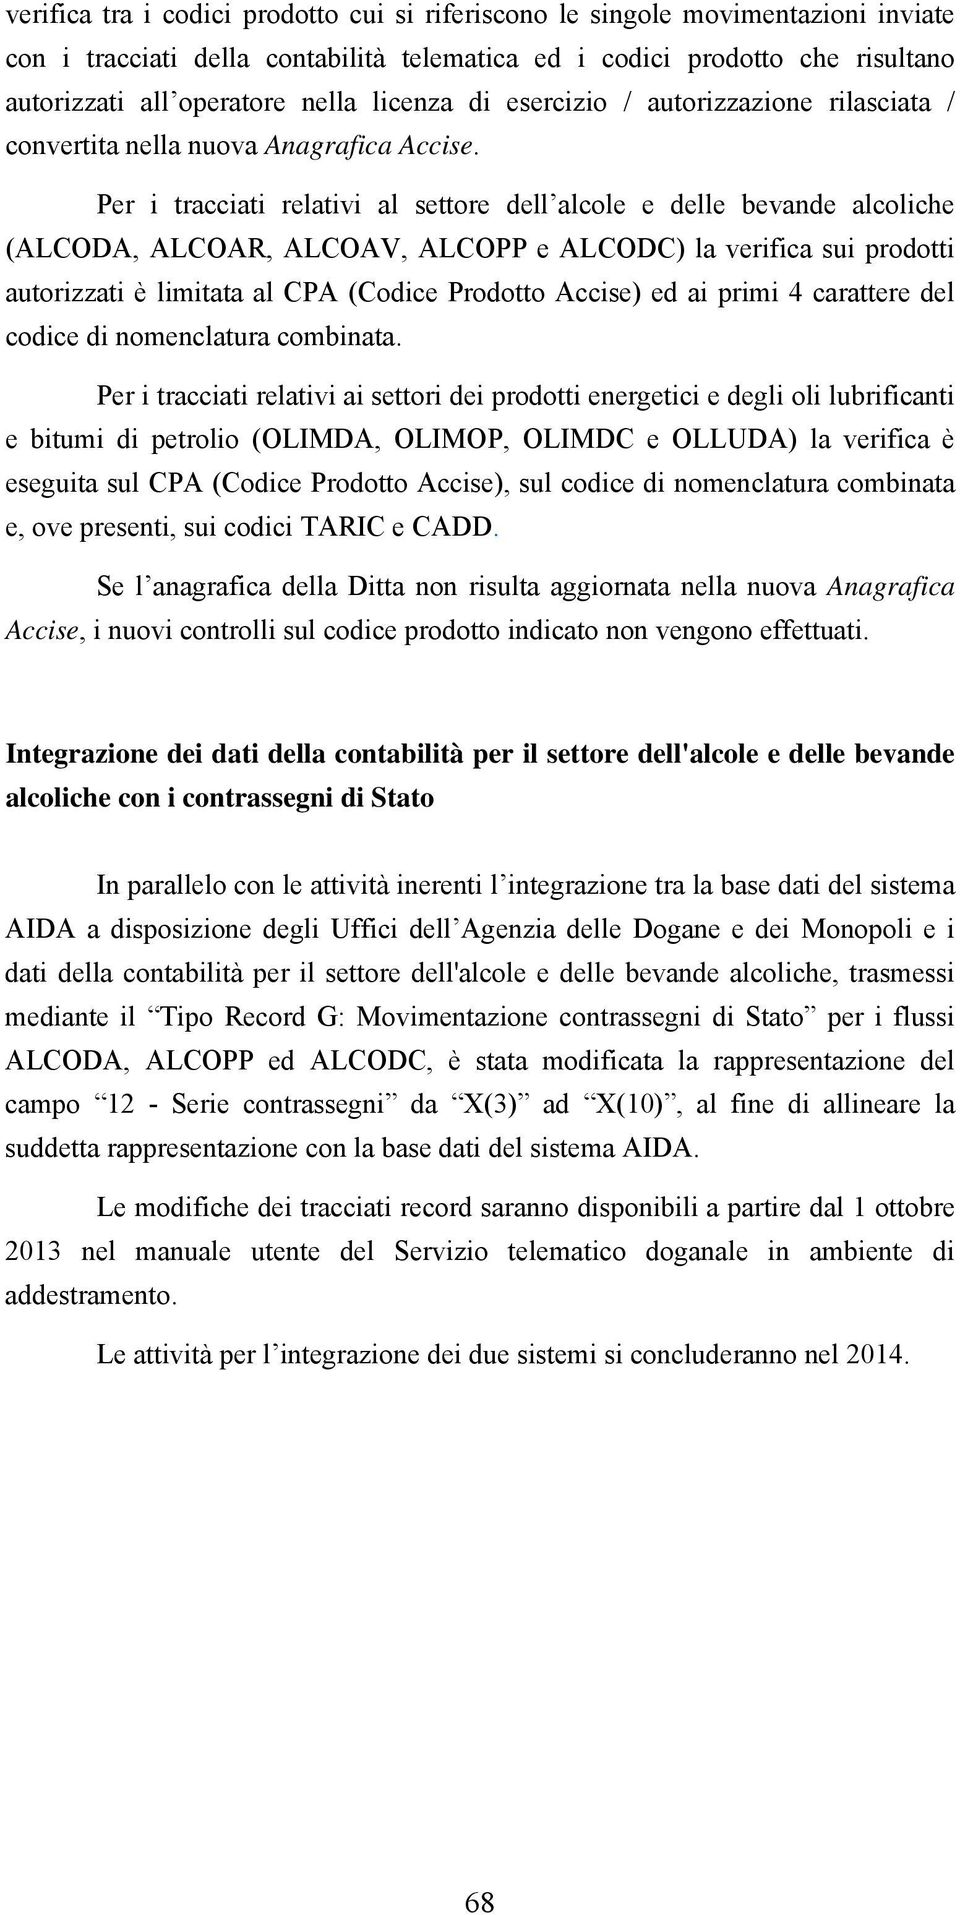 Per i tracciati relativi al settore dell alcole e delle bevande alcoliche (ALCODA, ALCOAR, ALCOAV, ALCOPP e ALCODC) la verifica sui prodotti autorizzati è limitata al CPA (Codice Prodotto Accise) ed